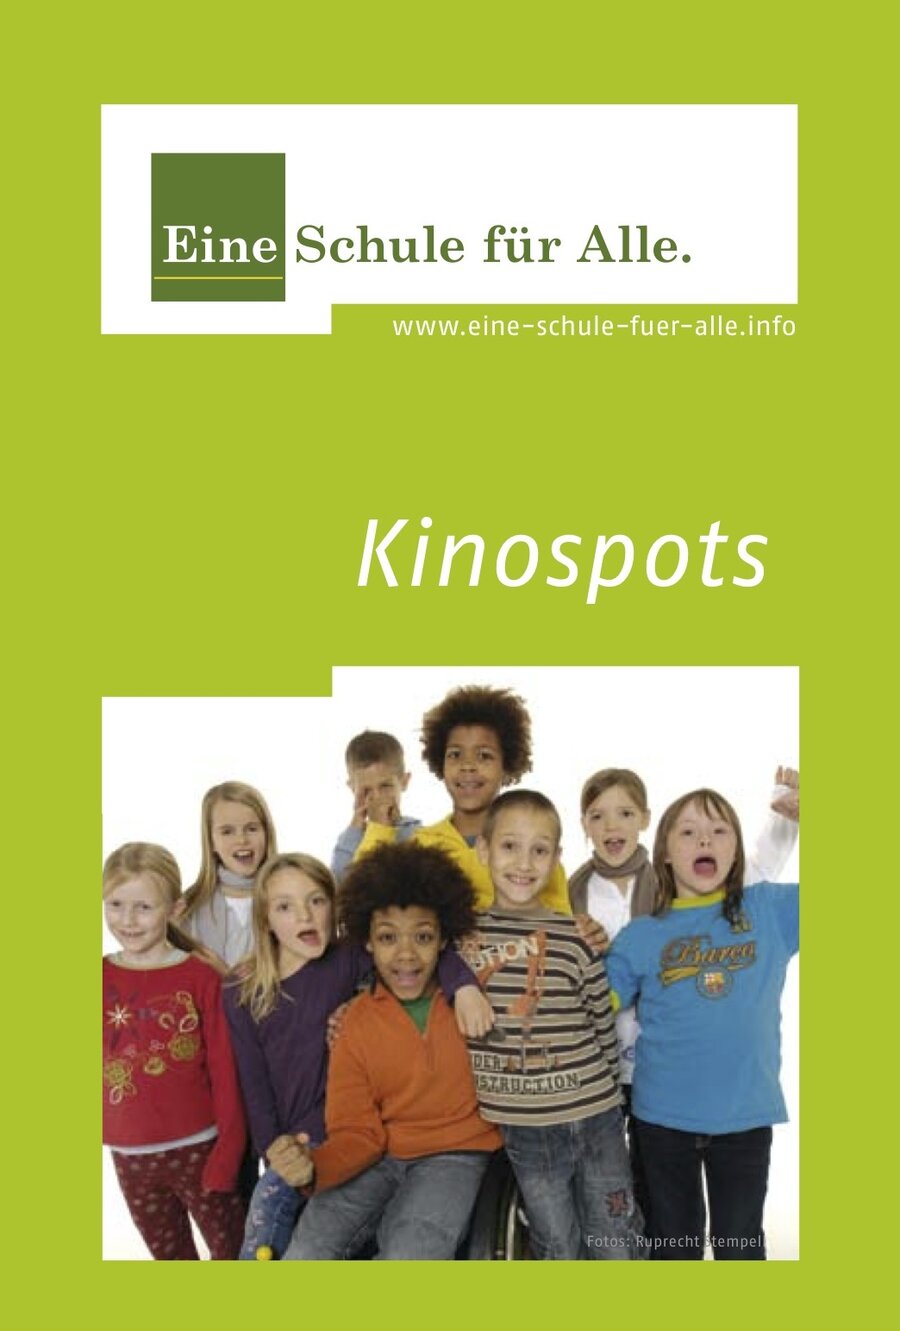 Kinospots, Grüner Hintergrund, kleines Foto von mehreren Kindern, davon eines in einem Rollstuhl, Titel Kinospots